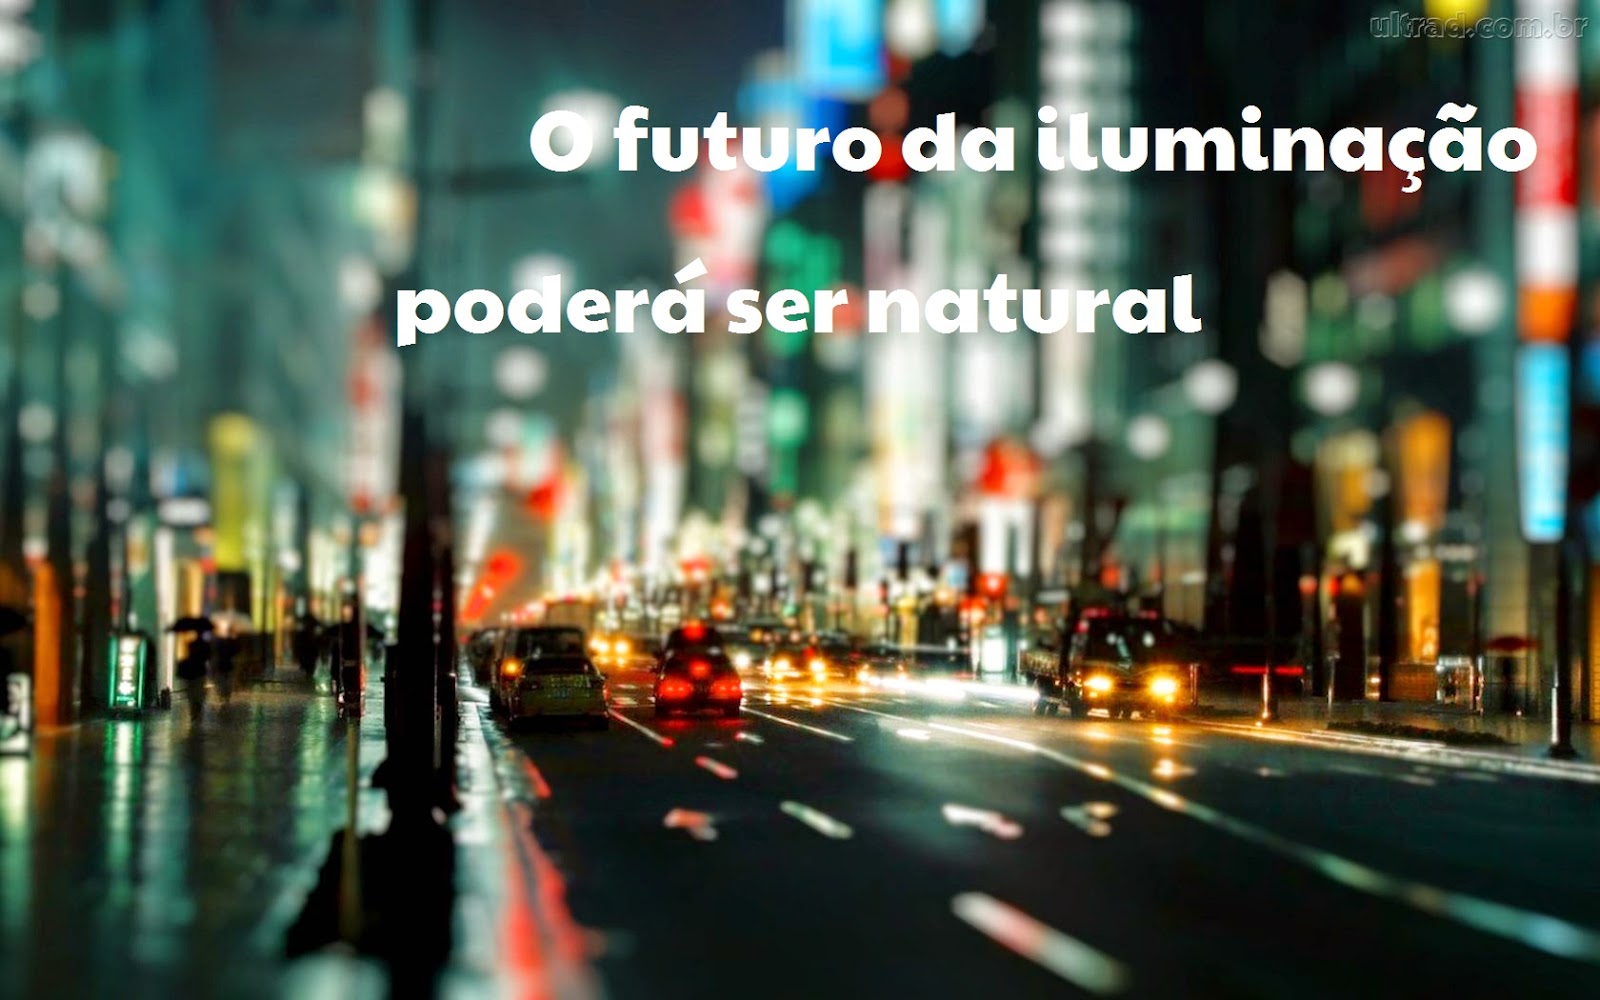  http://unseraum.blogspot.com.br/2014/09/o-futuro-da-iluminacao-podera-ser.html